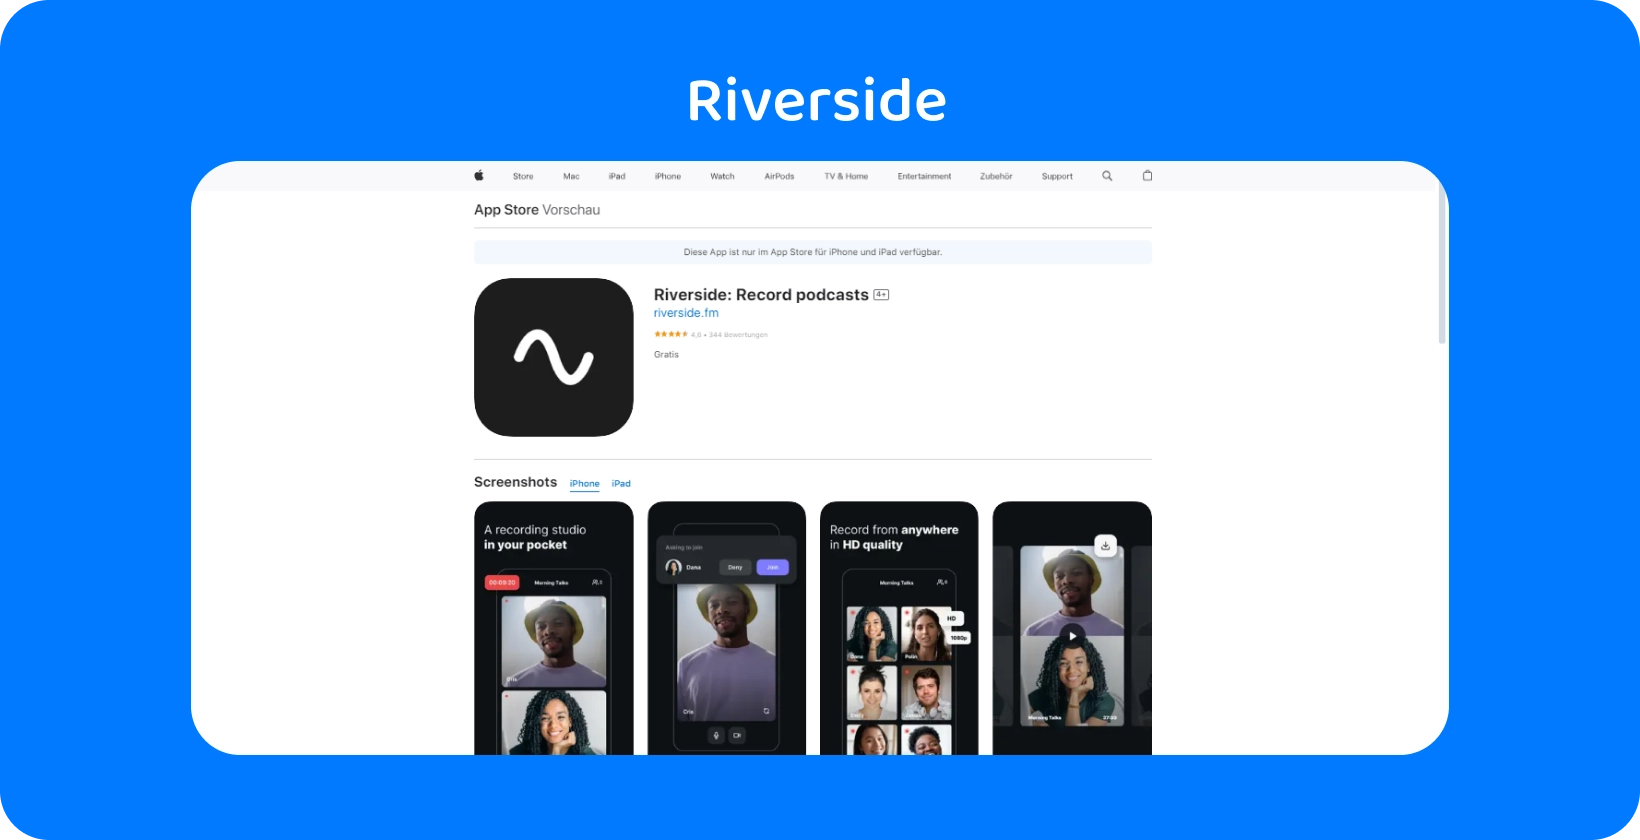 App Store'deki Riverside uygulaması, yüksek kaliteli podcast kaydı ve uzaktan röportajlar için araçlar gösteriyor.